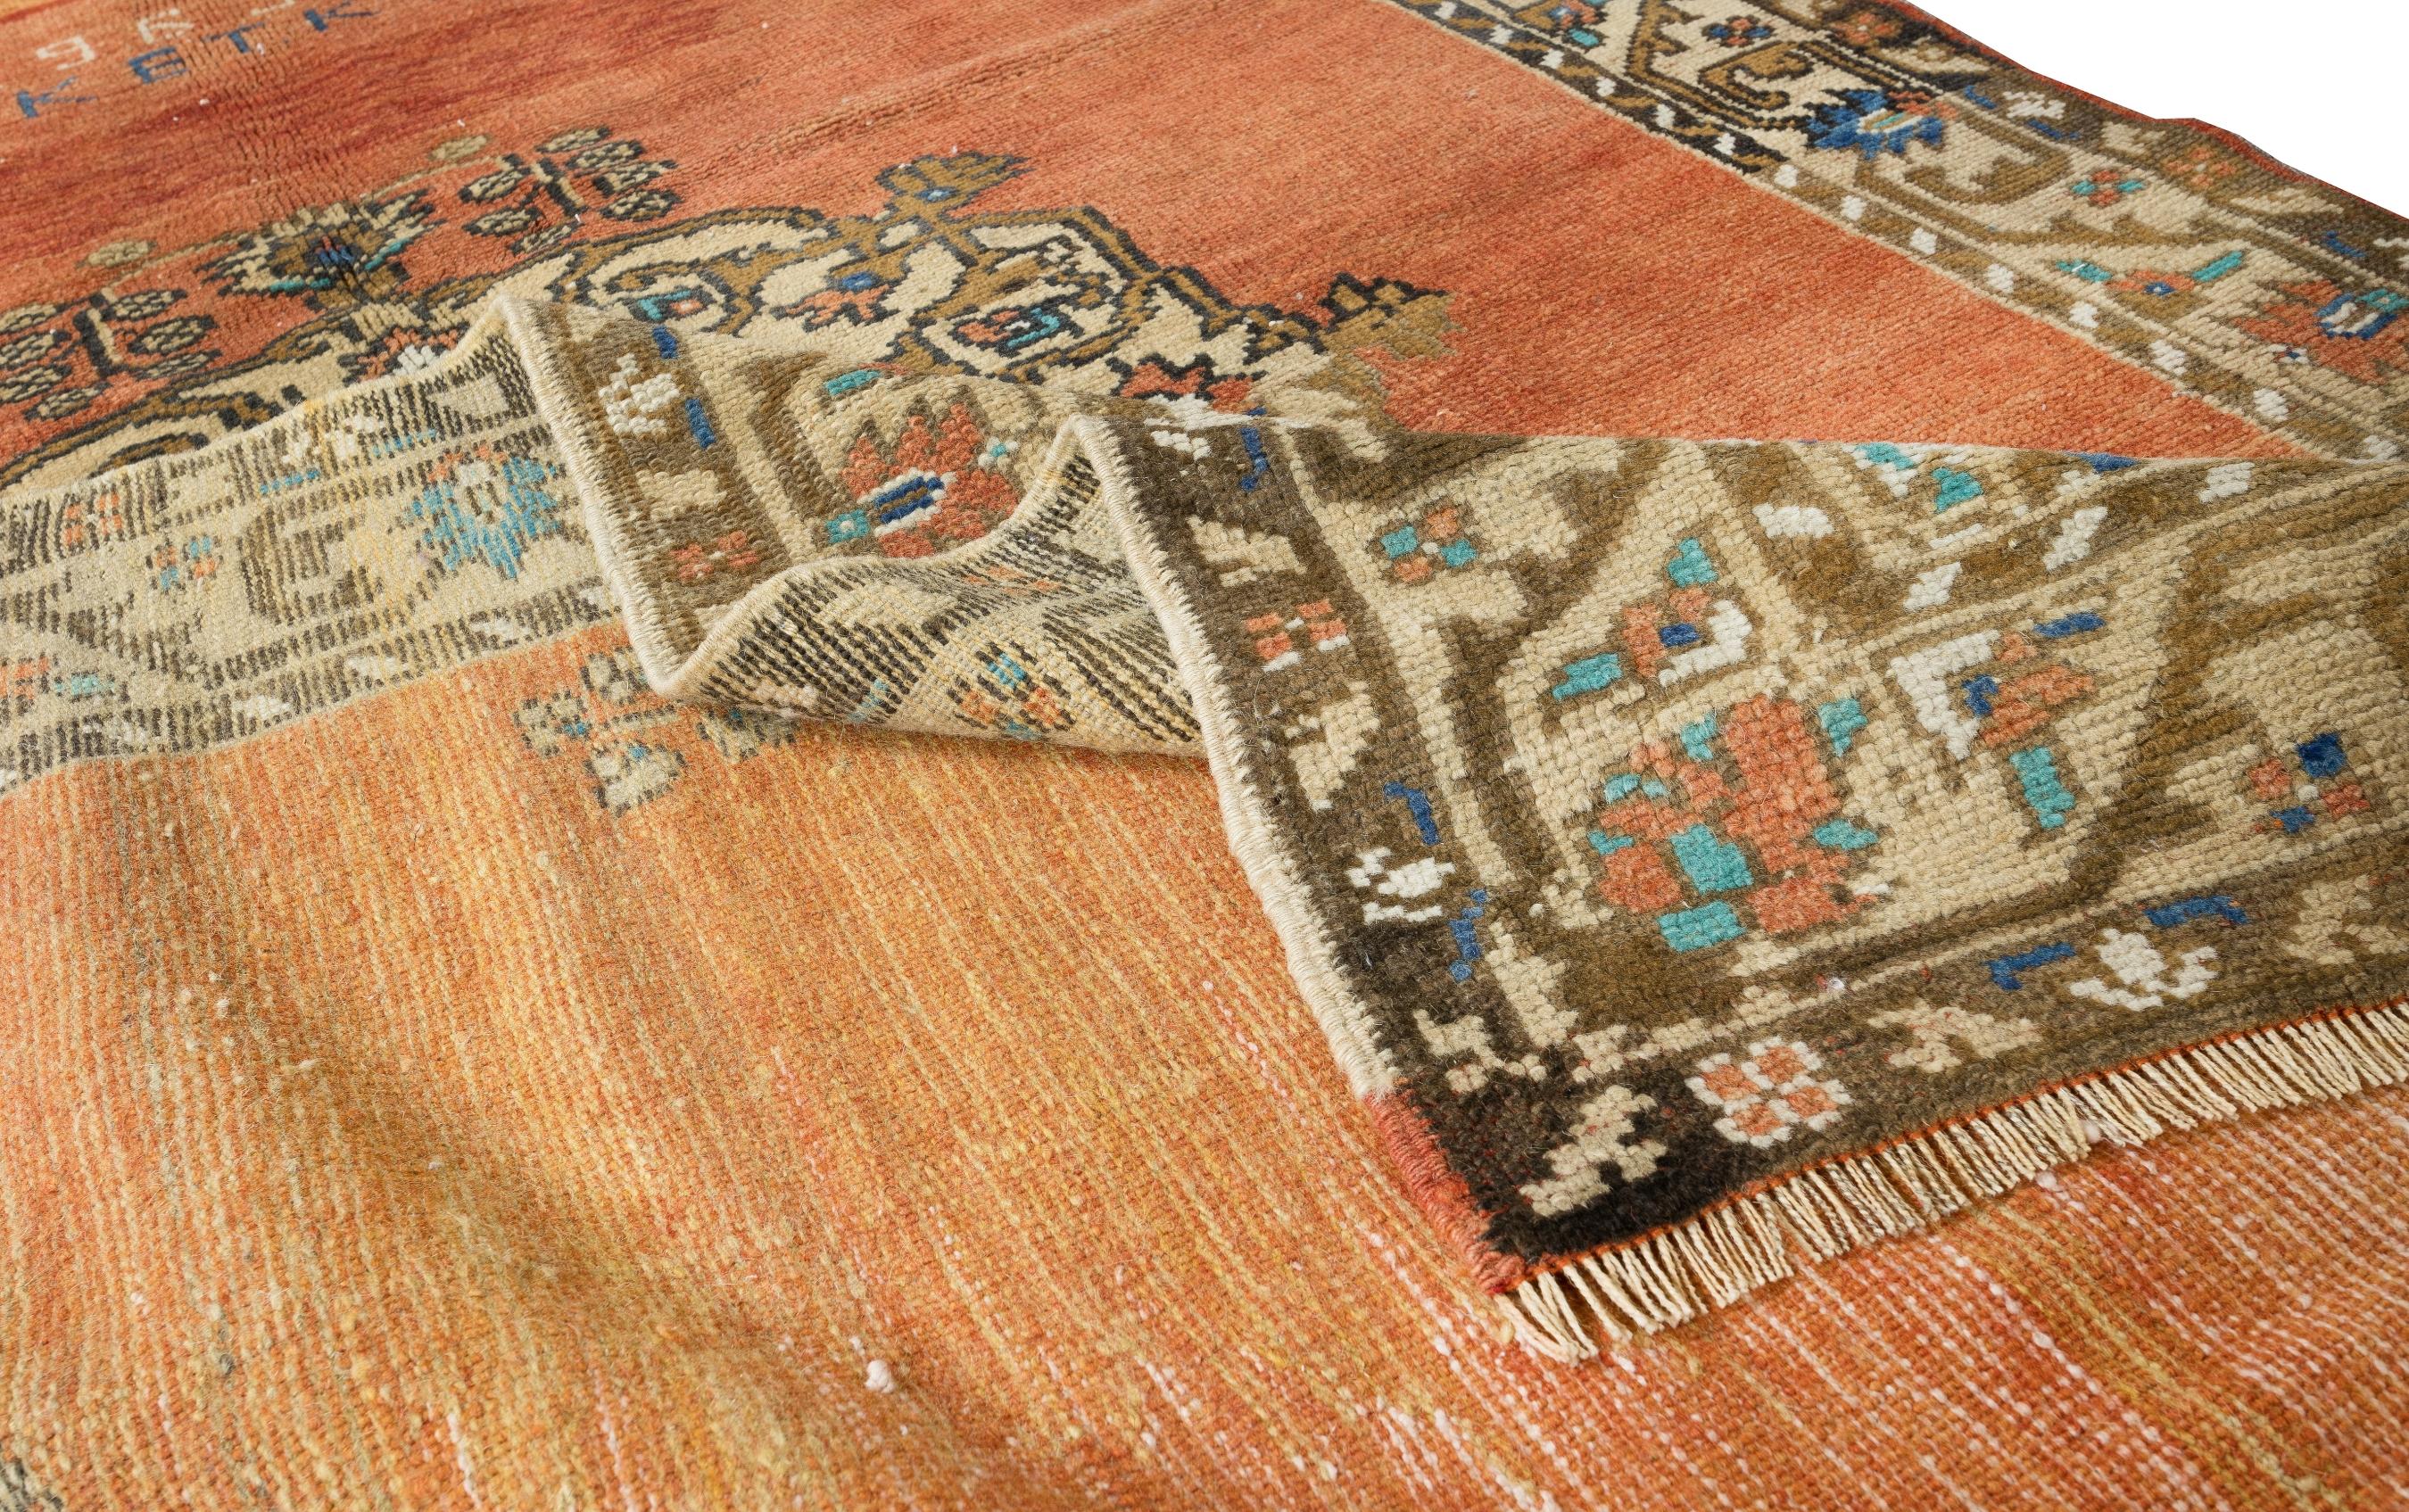 Tapis vintage d'Anatolie centrale finement noué à la main dans les années 1960. Le tapis a même des poils bas en laine sur une base en coton. Il est lourd et repose à plat sur le sol, en très bon état et sans problème. Il a été lavé de manière